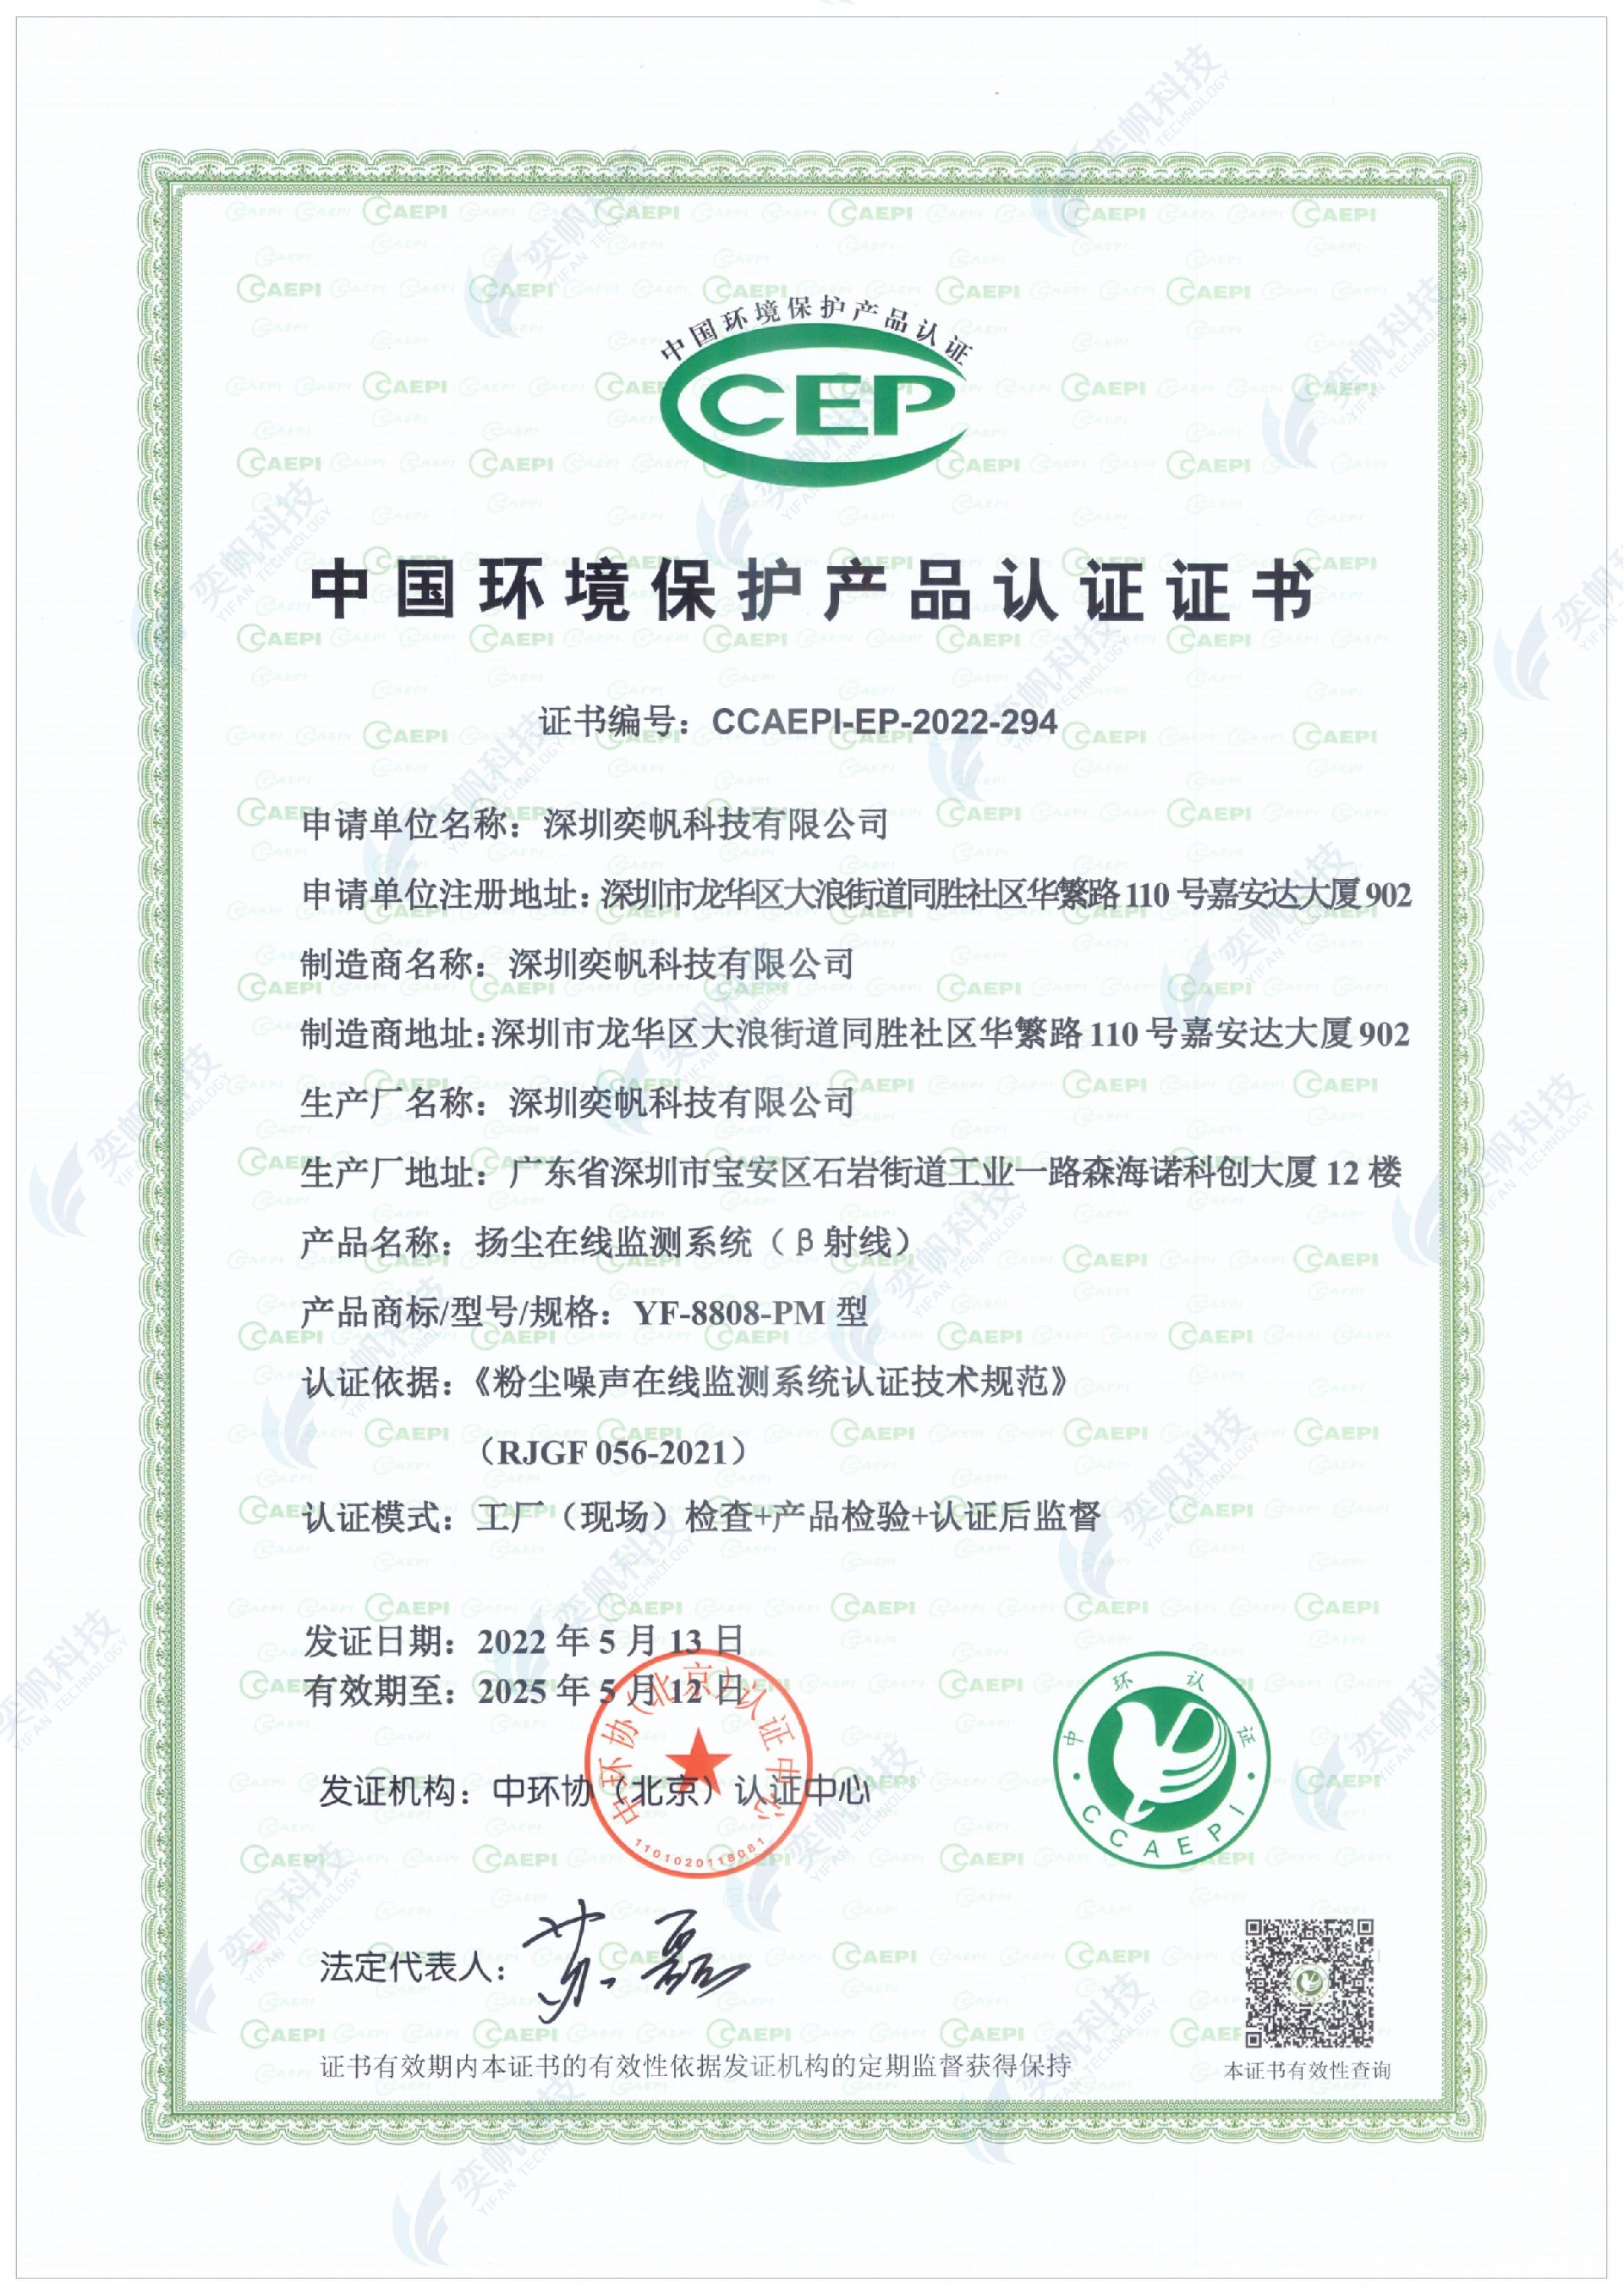 扬尘在线监测系统贝塔射线）YF-8808-PM中国环境保护产品认证证书CCEP_00.jpg